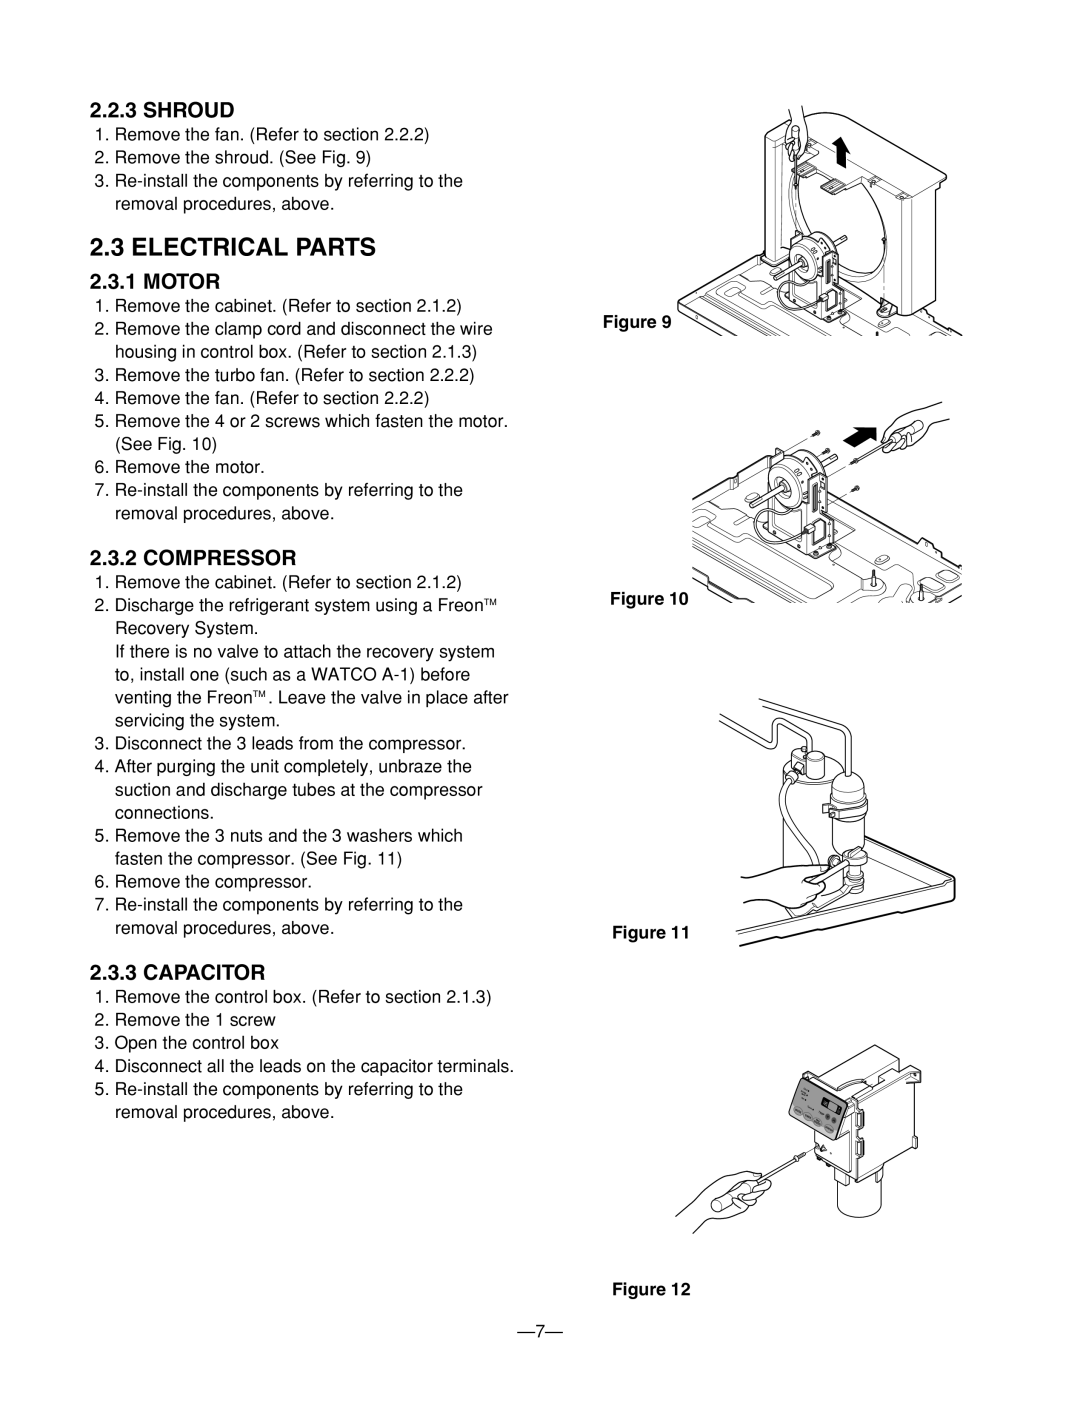 Heat Controller BG-103A service manual Electrical Parts, Shroud, Motor, Compressor, Capacitor, Figure Figure 